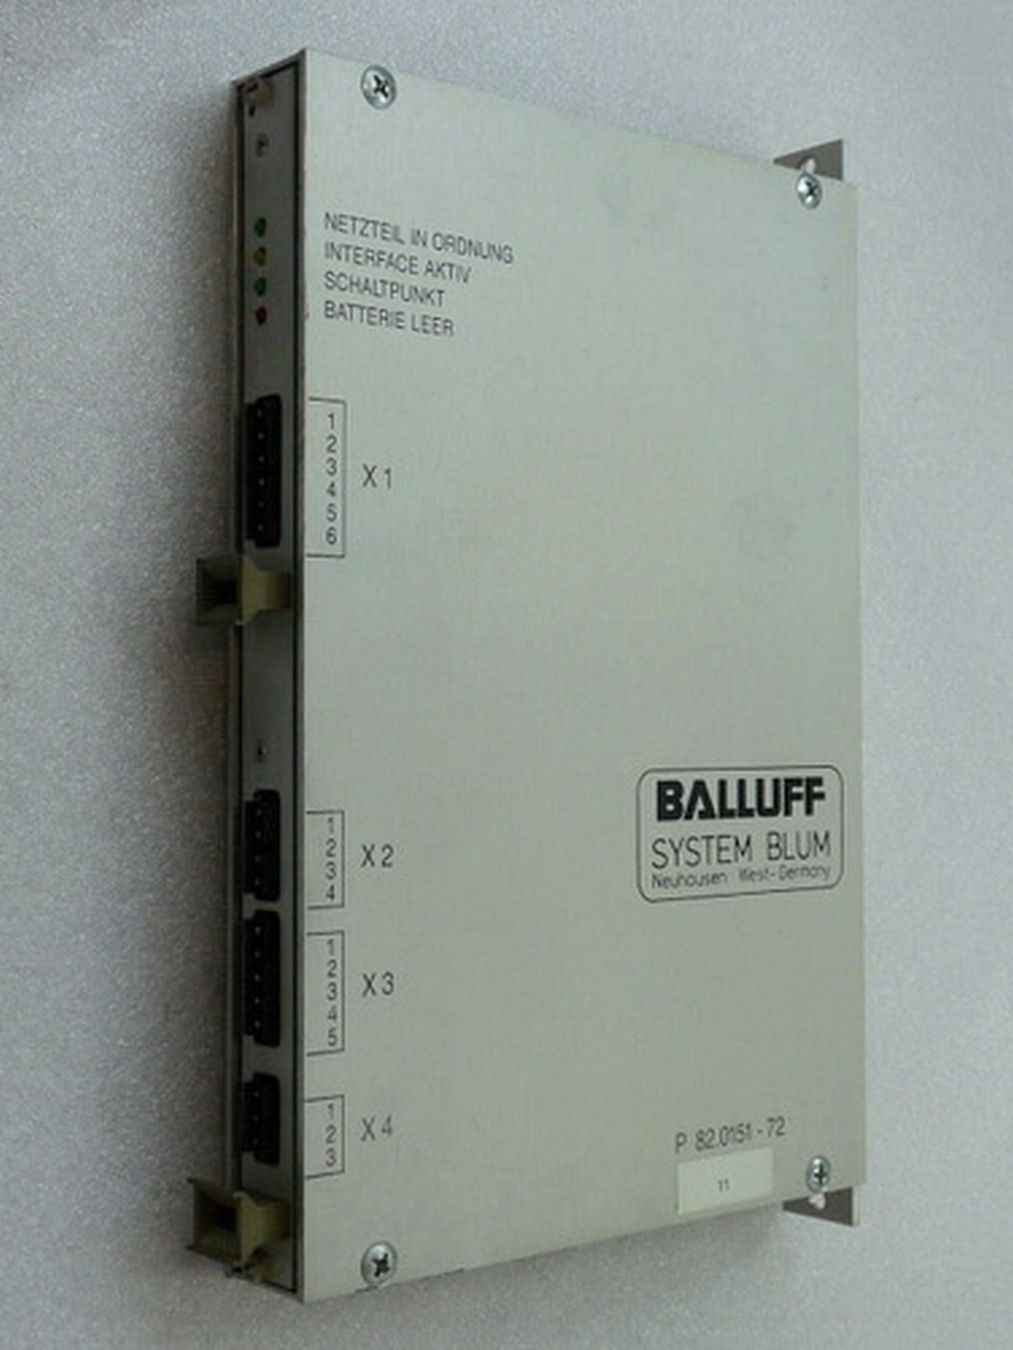 Balluff P 82.0151-72 System Blum Netzteil 82.0151-72,巴鲁夫,PLC